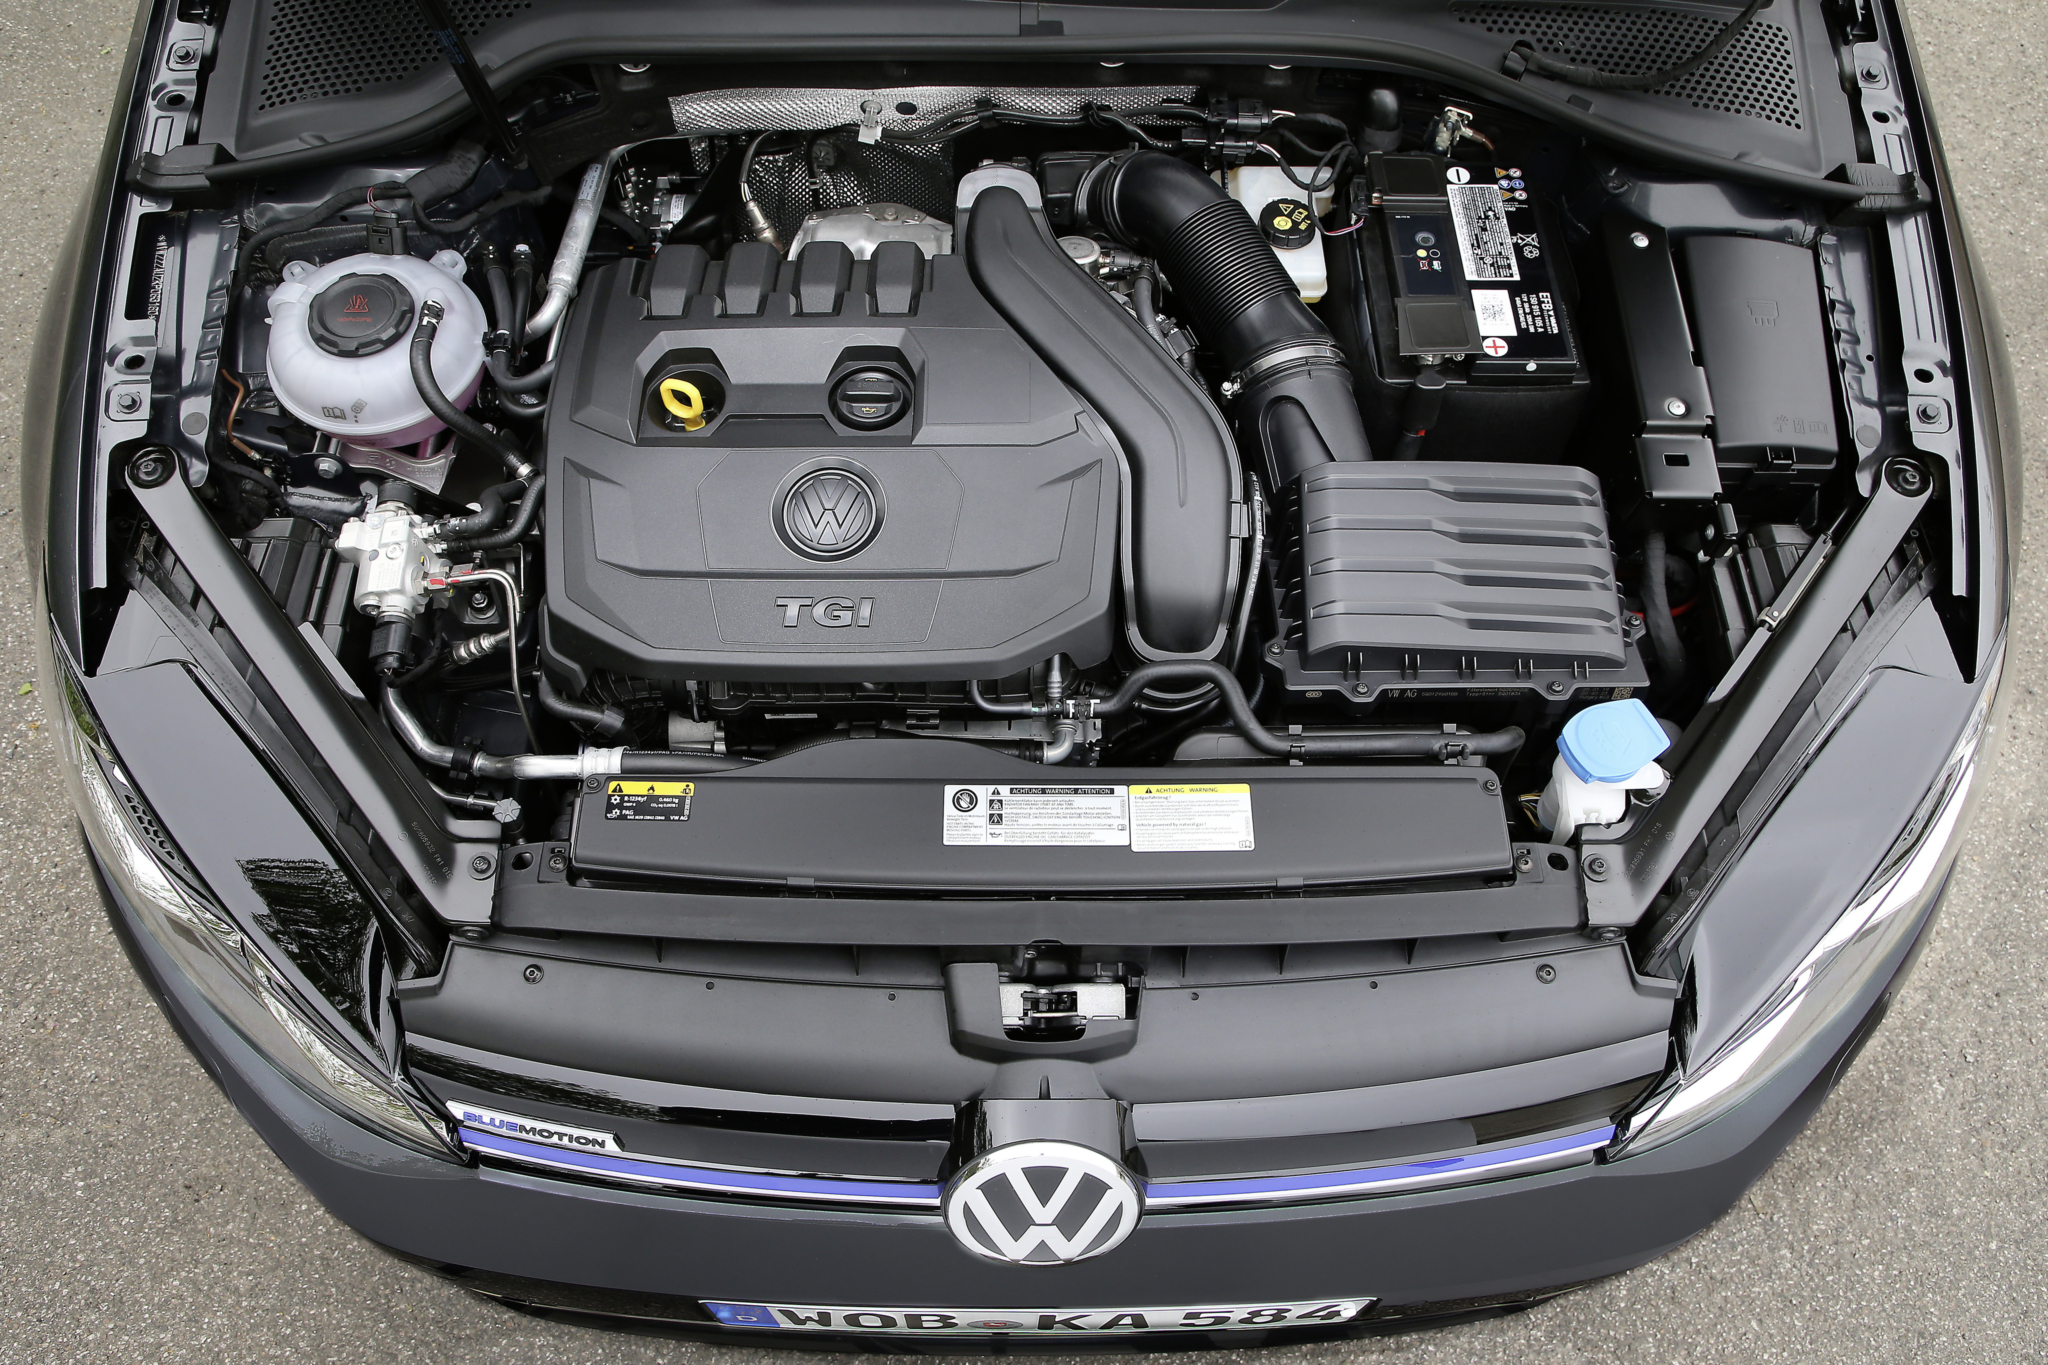 Volkswagen двигатели отзывы. Volkswagen Golf 6 под капотом. Моторный отсек Volkswagen. Гольф 7 моторный отсек. Моторный отсек Фольксваген гольф плюс 1.6.